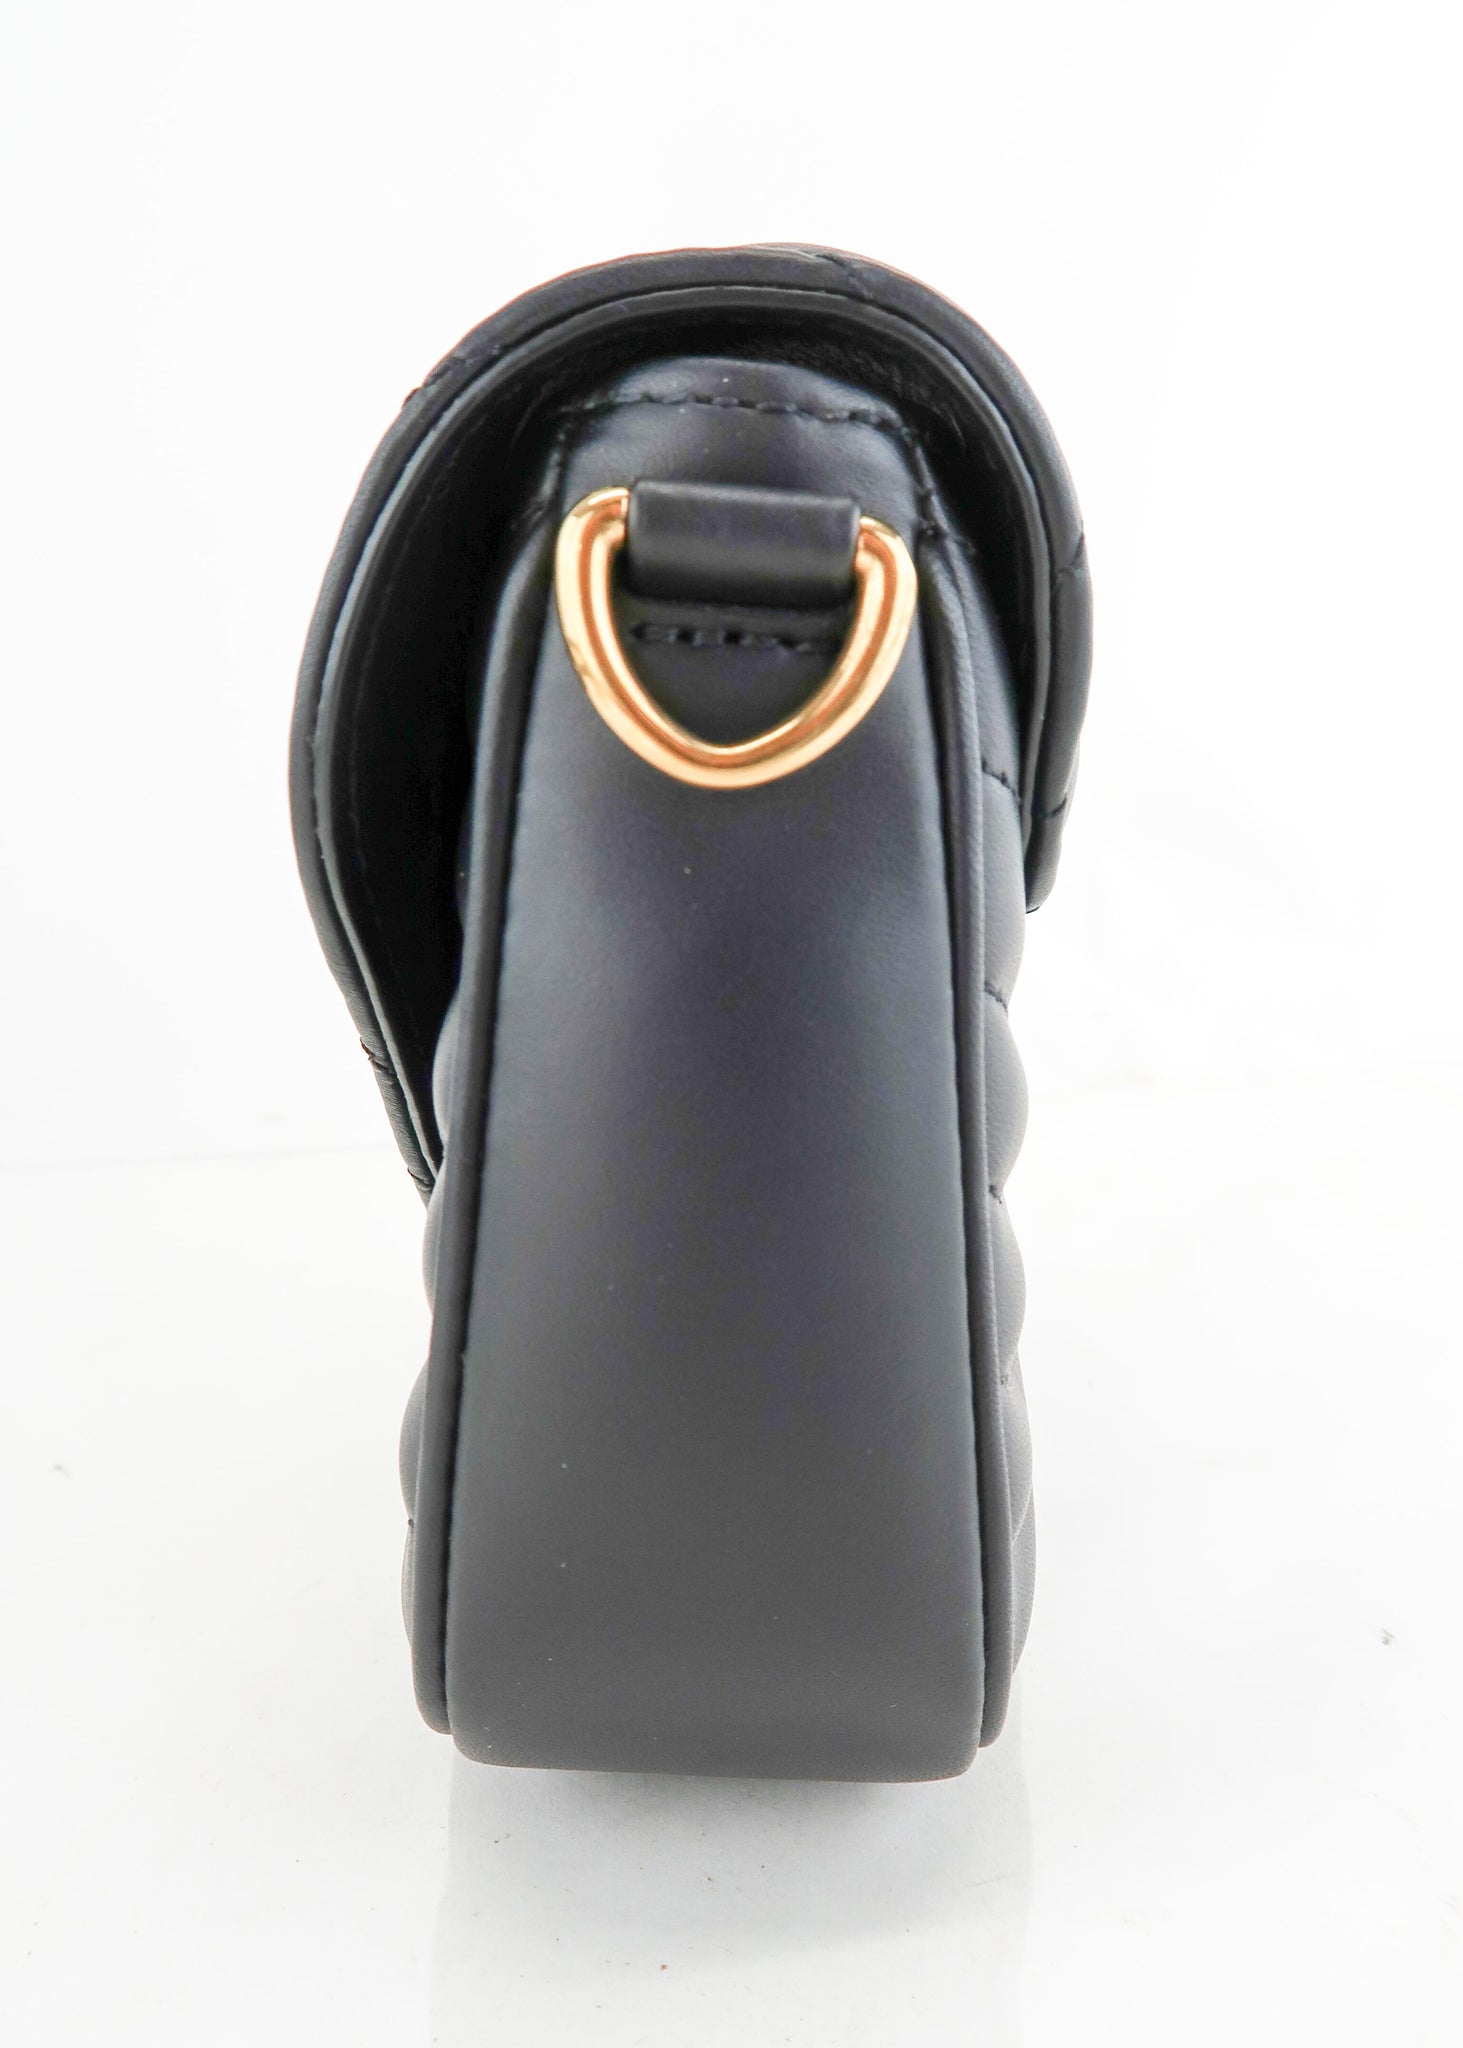 Louis Vuitton Double Zip Pochette – ARMCANDY BAG CO